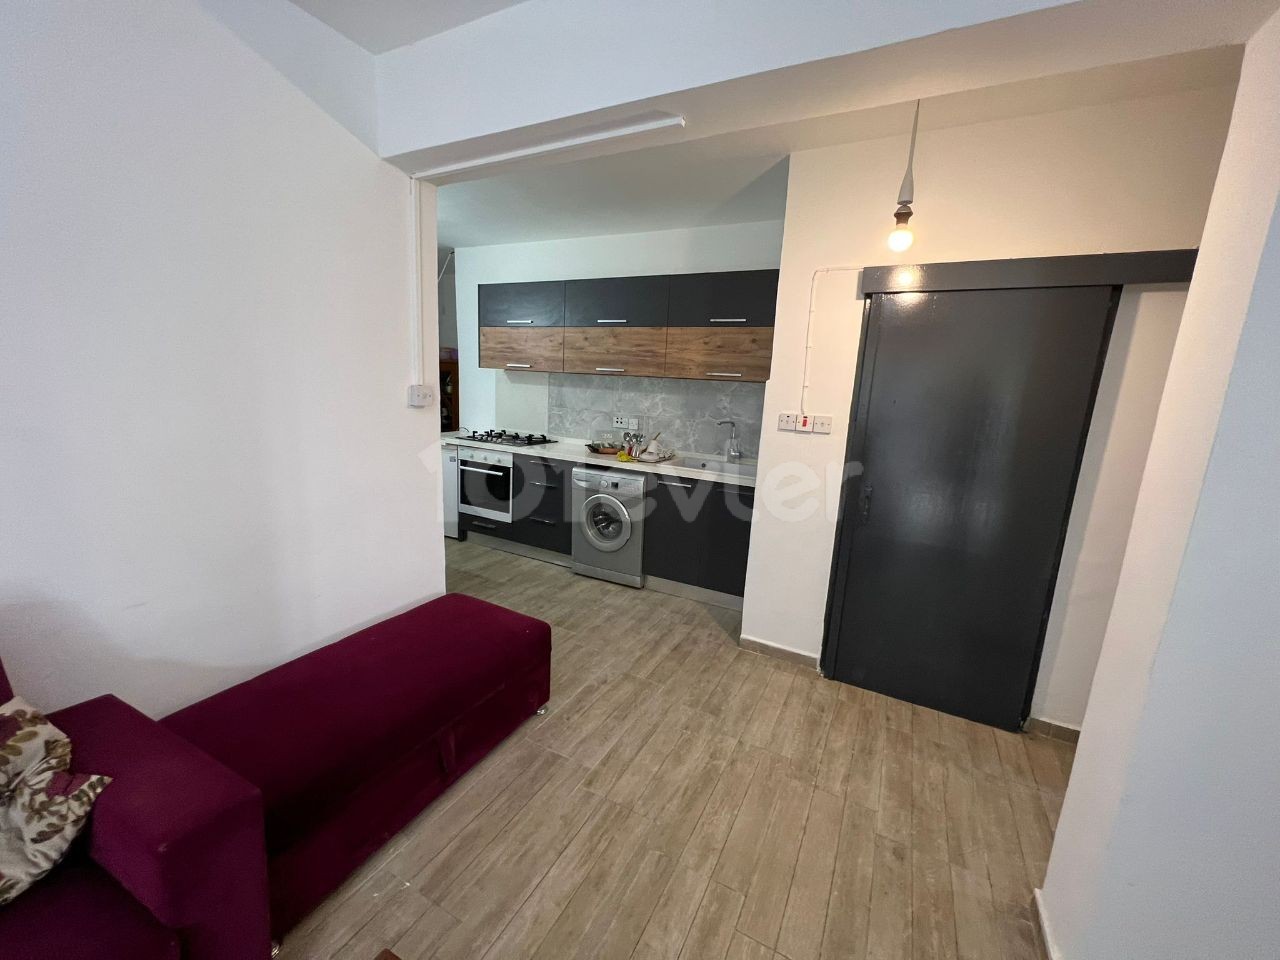 Yenikent 2+1 Ground Floor Apartment For Rent 350stg